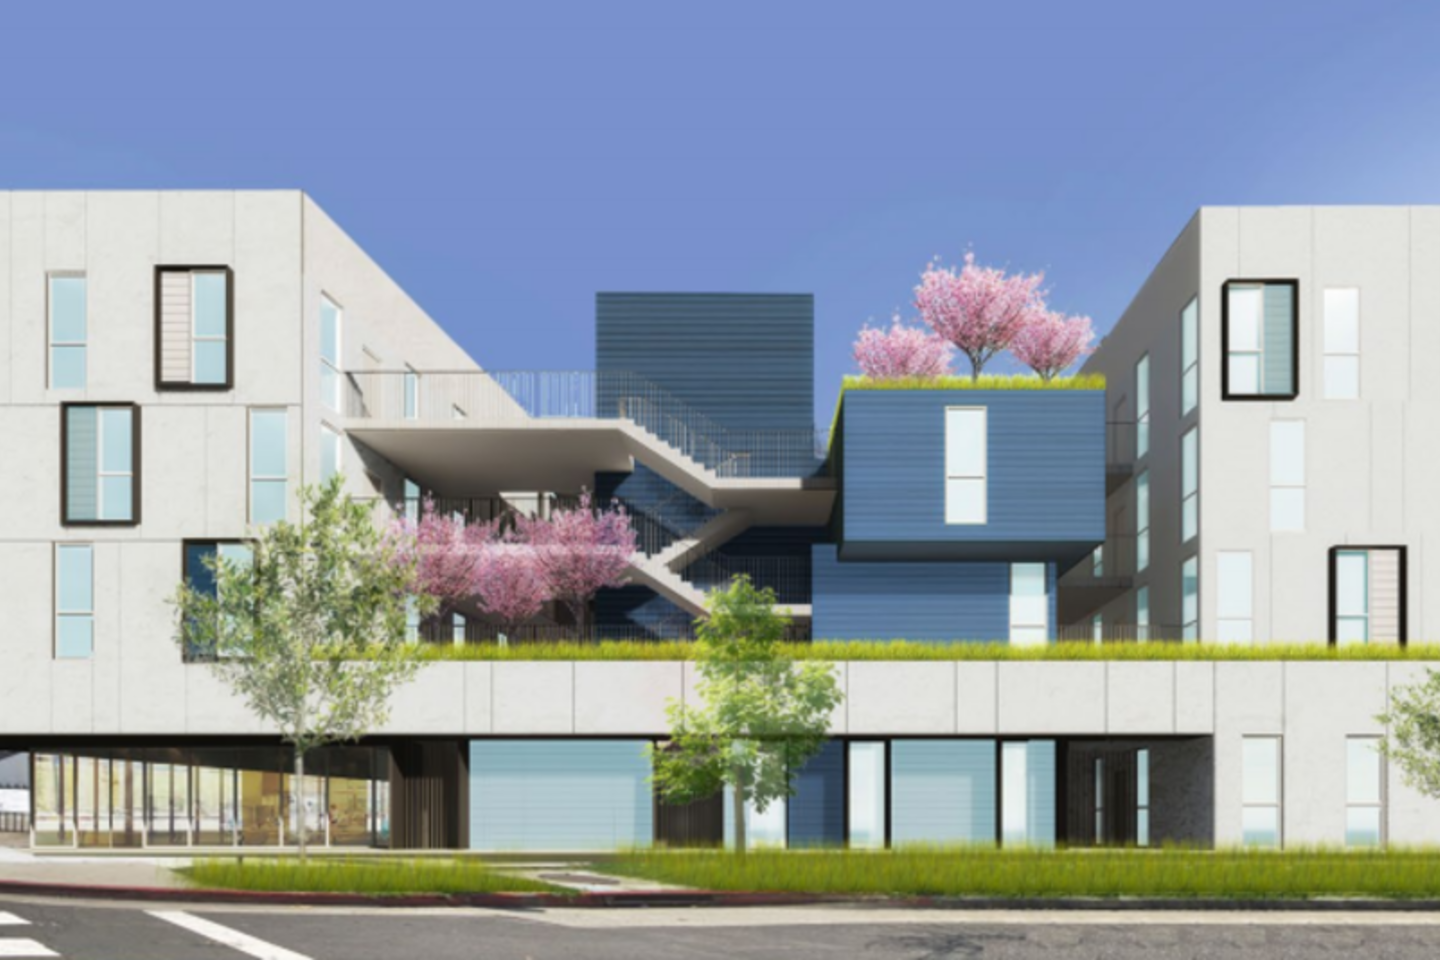 Daugiabučio projektas – vizualizacija Santa Monikoje. Tokiose namuose nuomojamas būstas nepasiturintiems.  